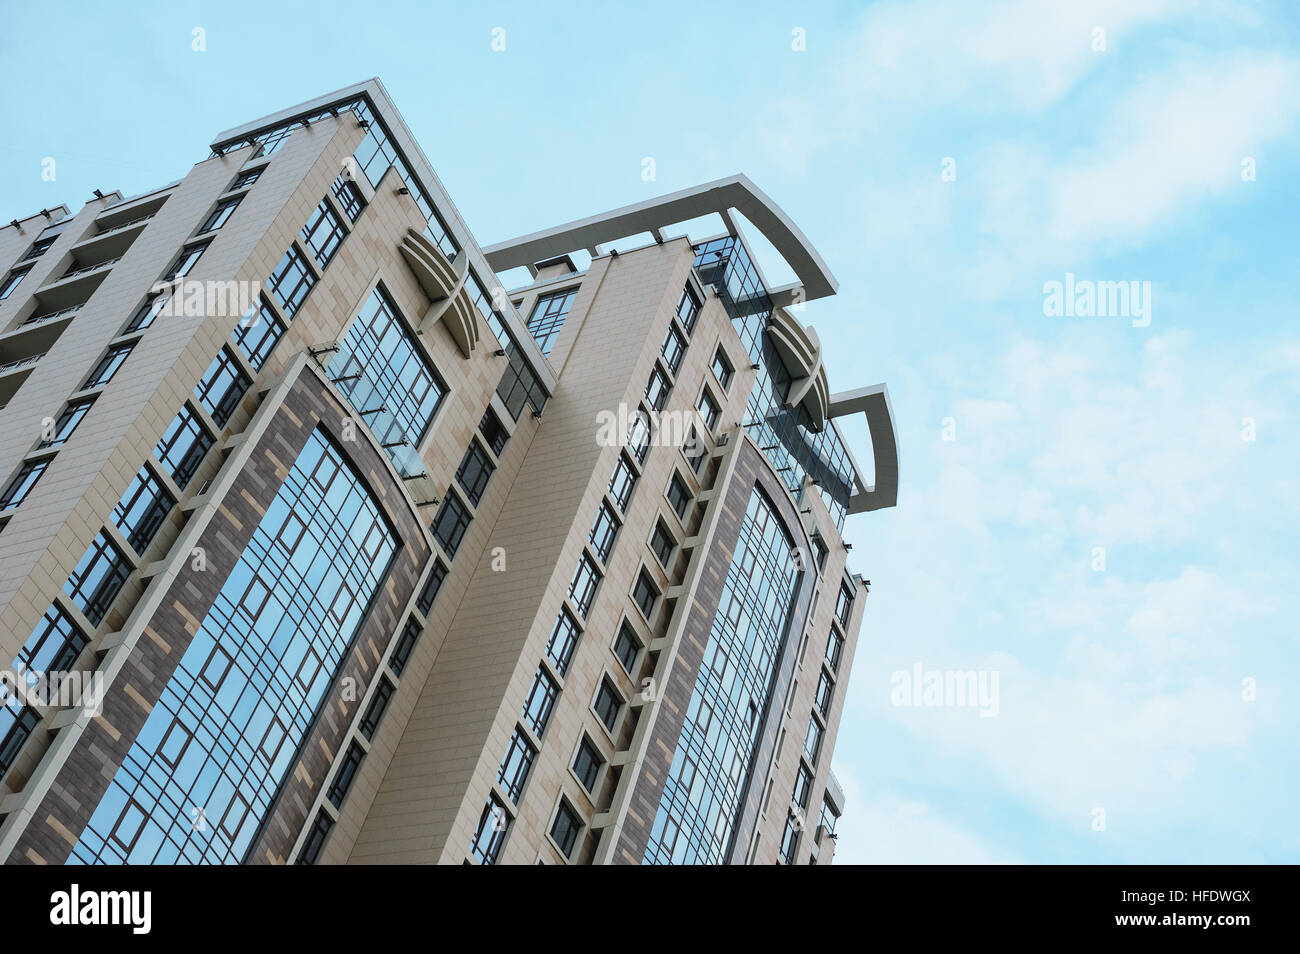 Mehrstöckige Appartementhaus am Himmelshintergrund Stockfoto